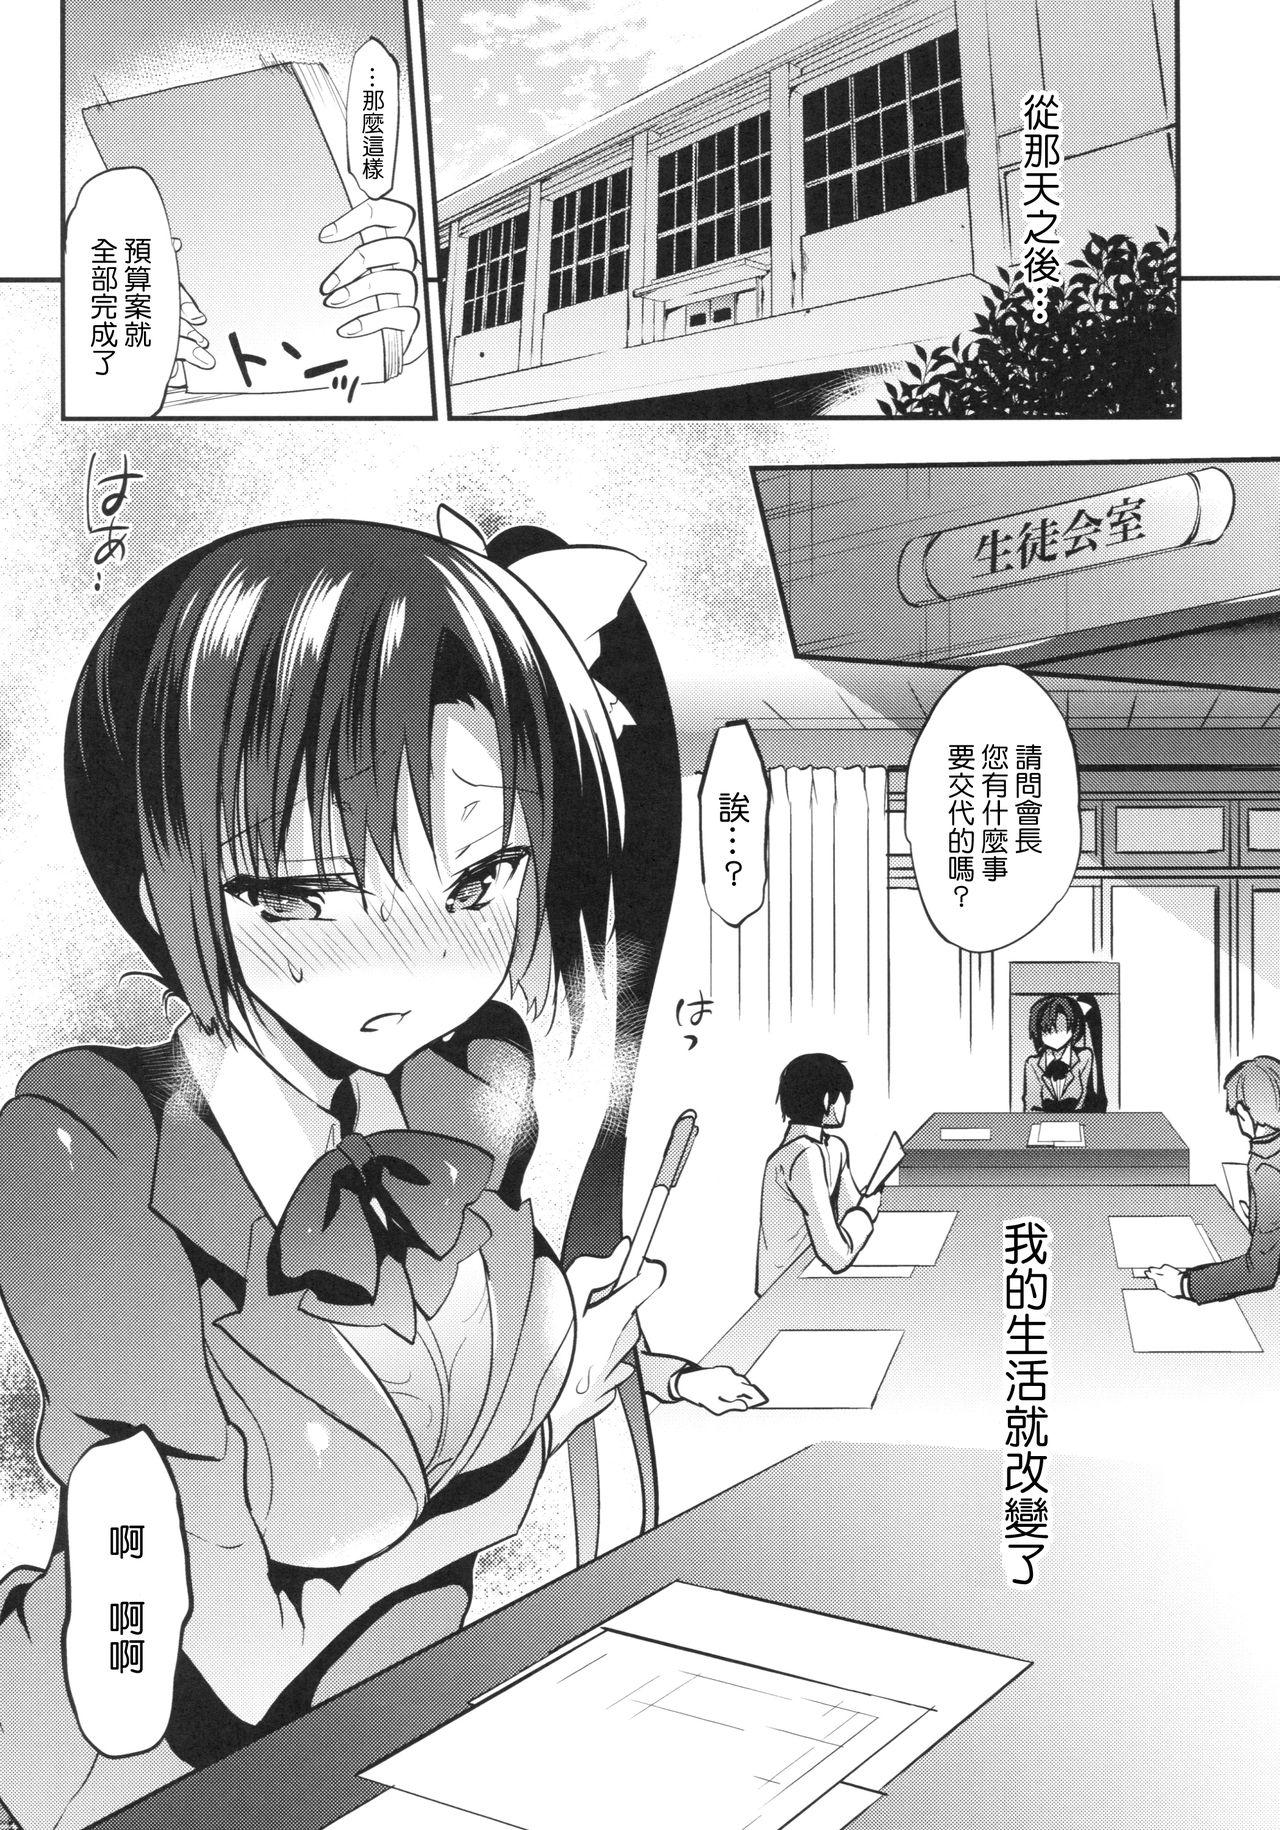 Innocent Gakkou de Seishun! 13 - Original Chupando - Page 4